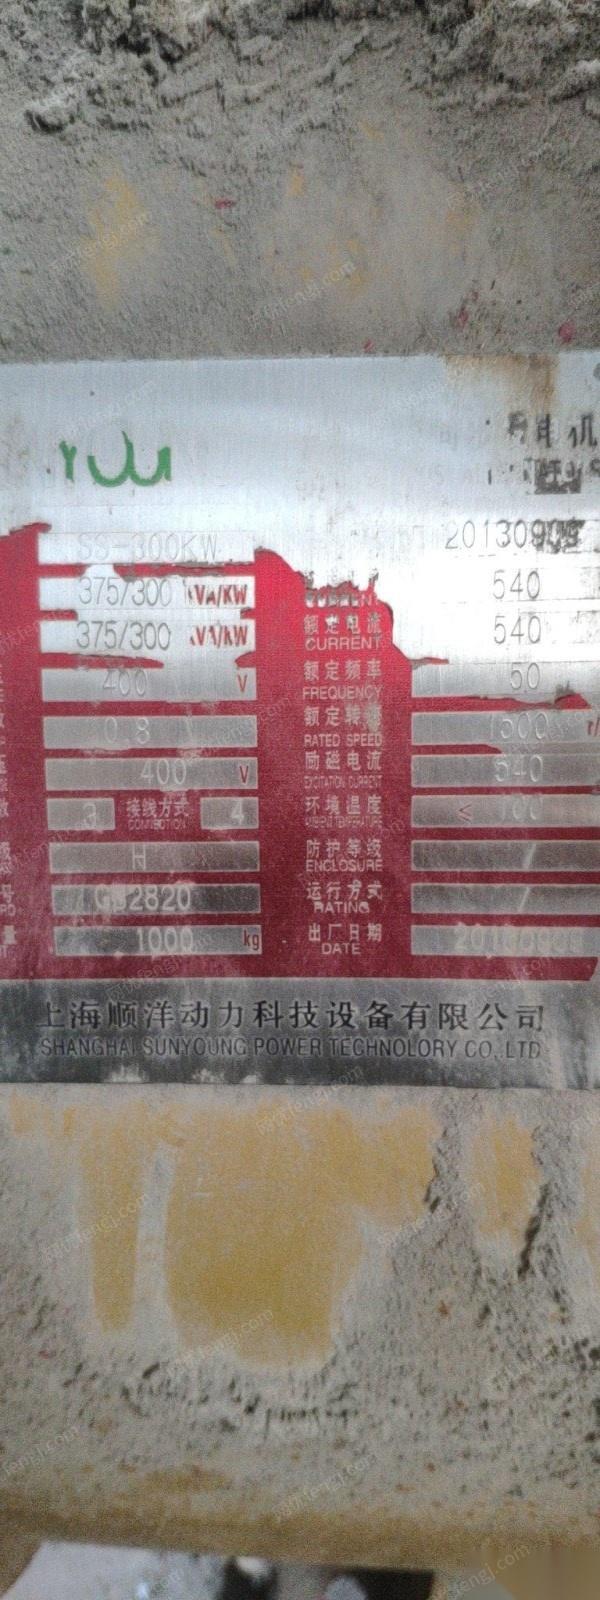 江西萍乡出售1台上海顺洋300kw柴油发电机  看货议价